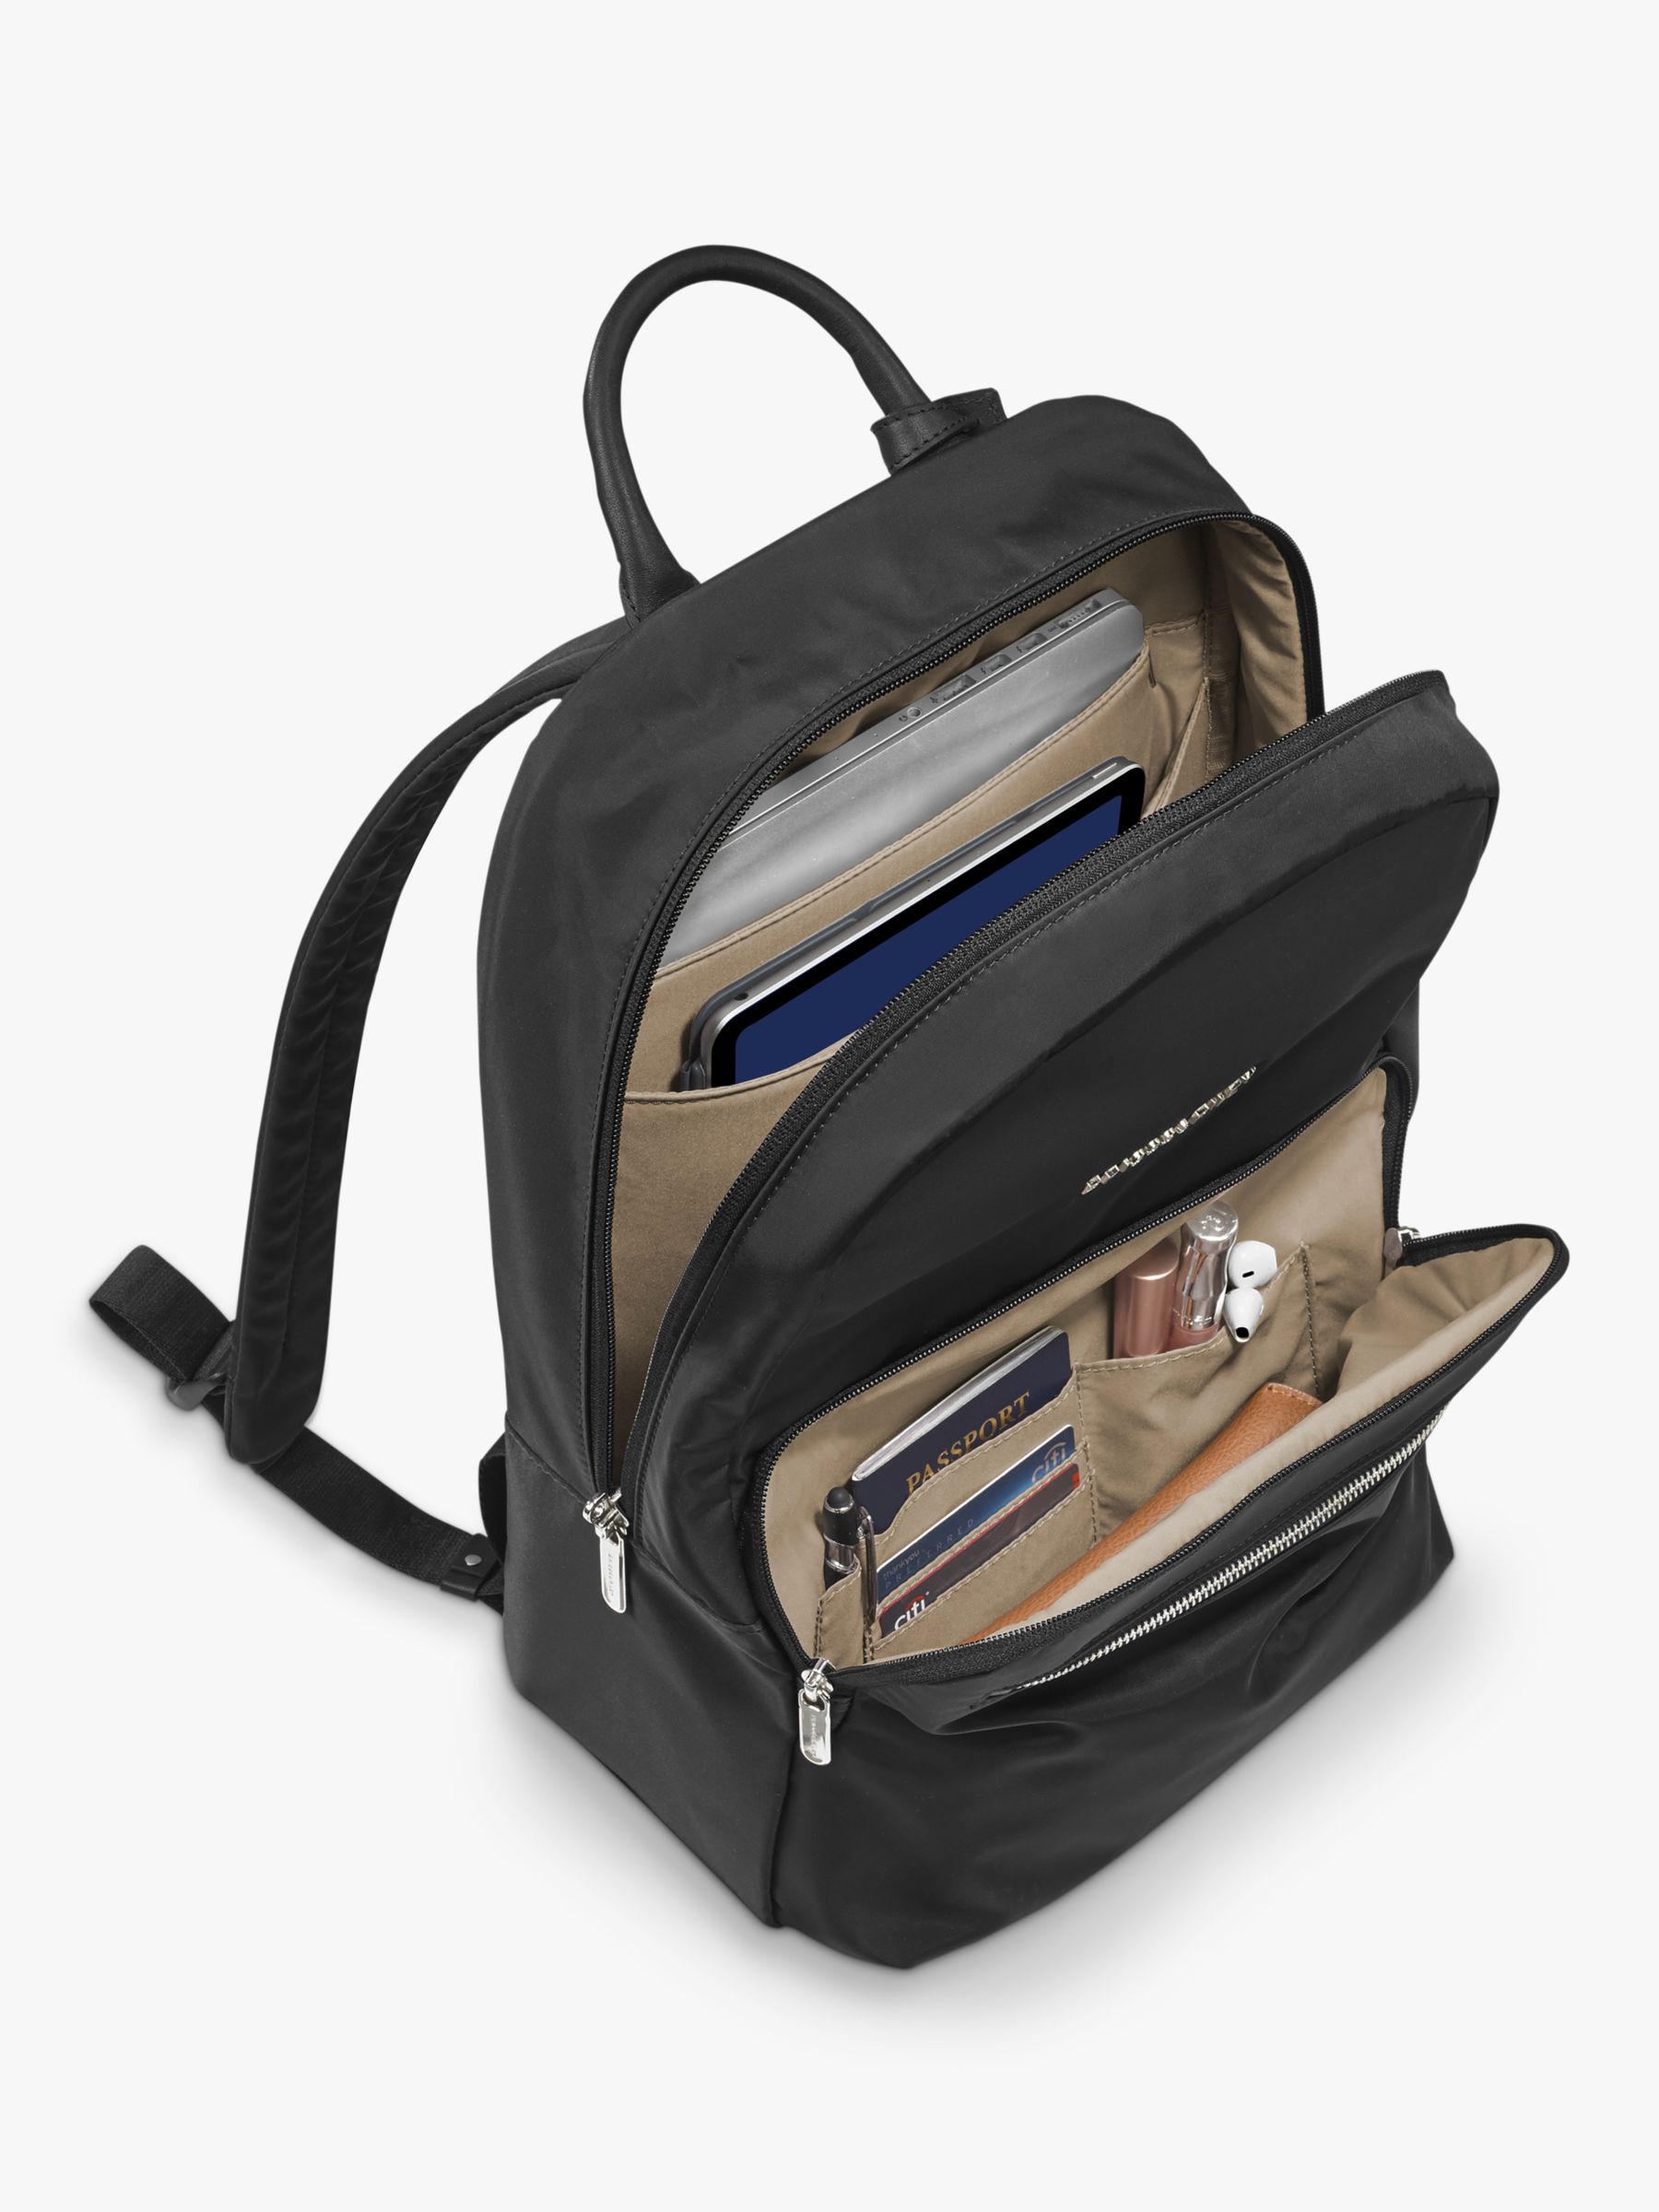 Buy Briggs & Riley Rhapsody Essential Backpack Online at johnlewis.com